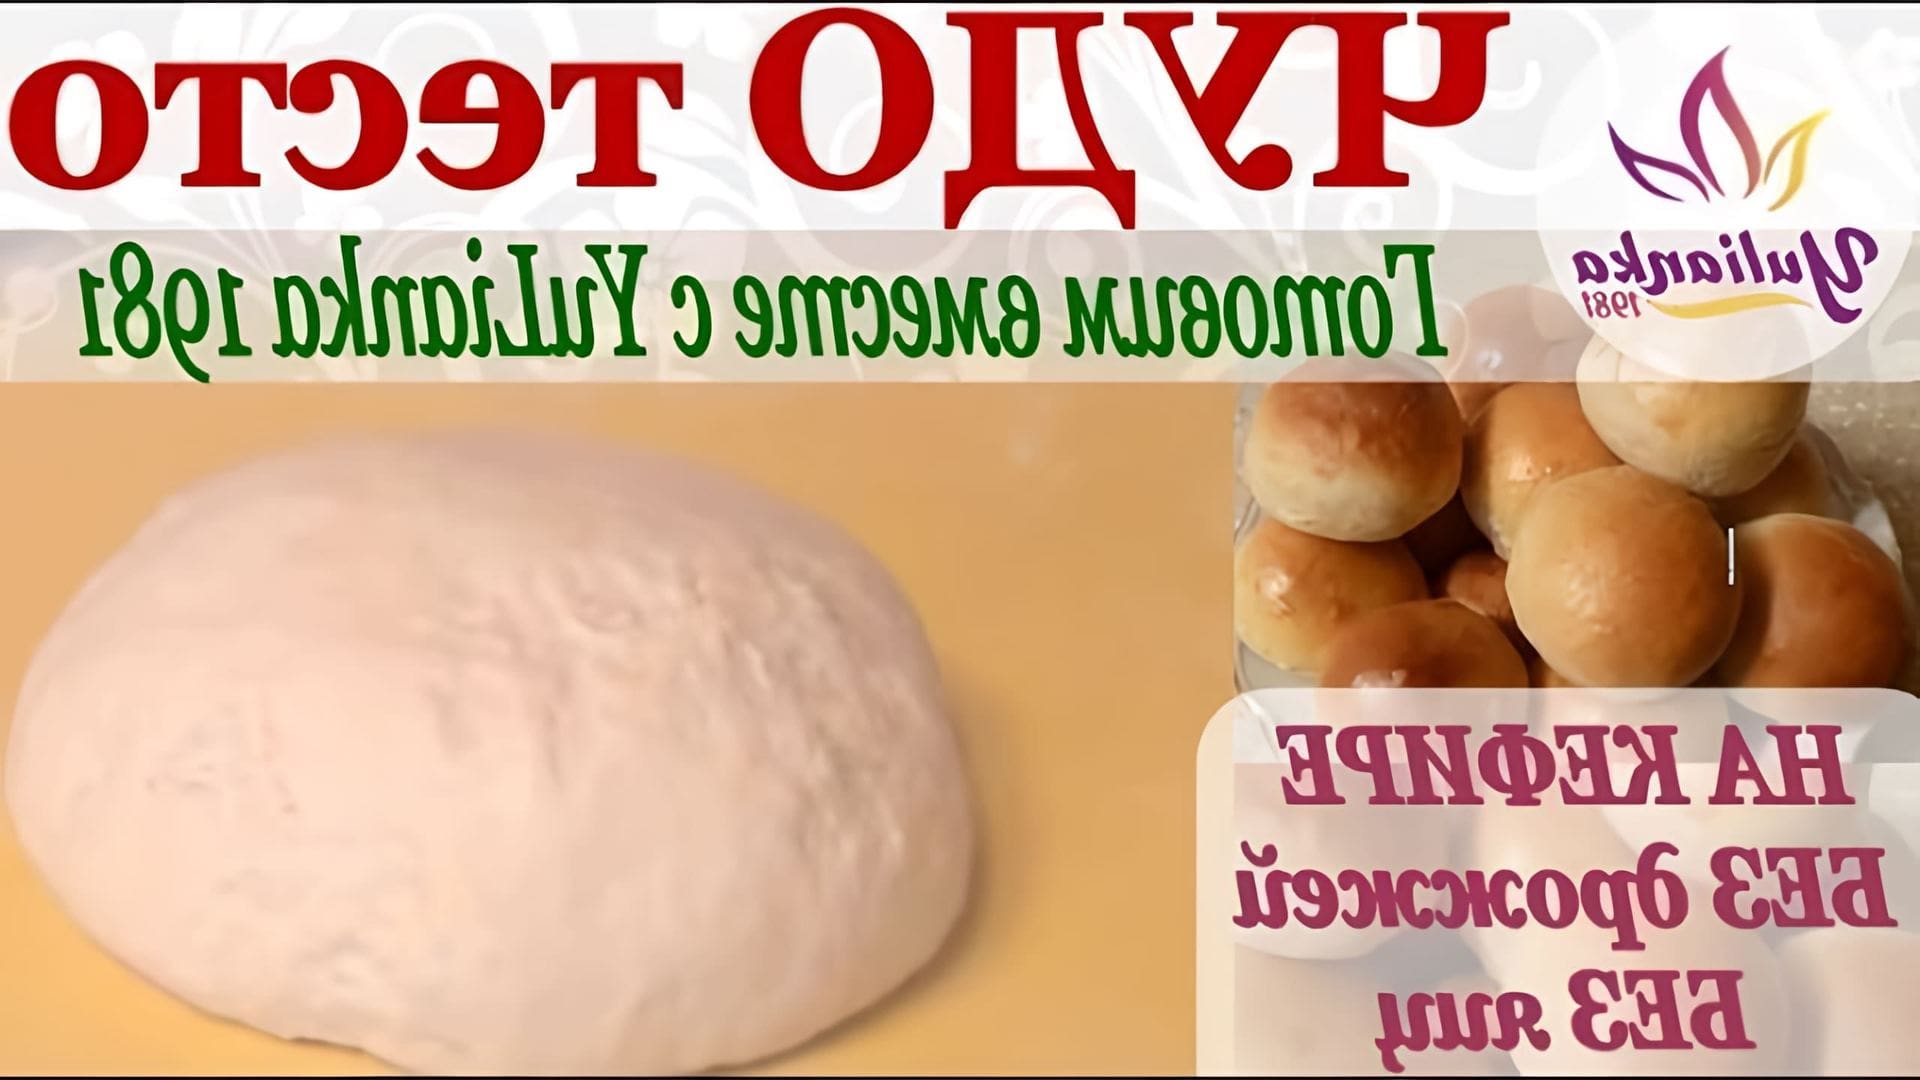 В этом видео демонстрируется рецепт приготовления теста, которое называется "Чудо-тесто на кефире без яиц"